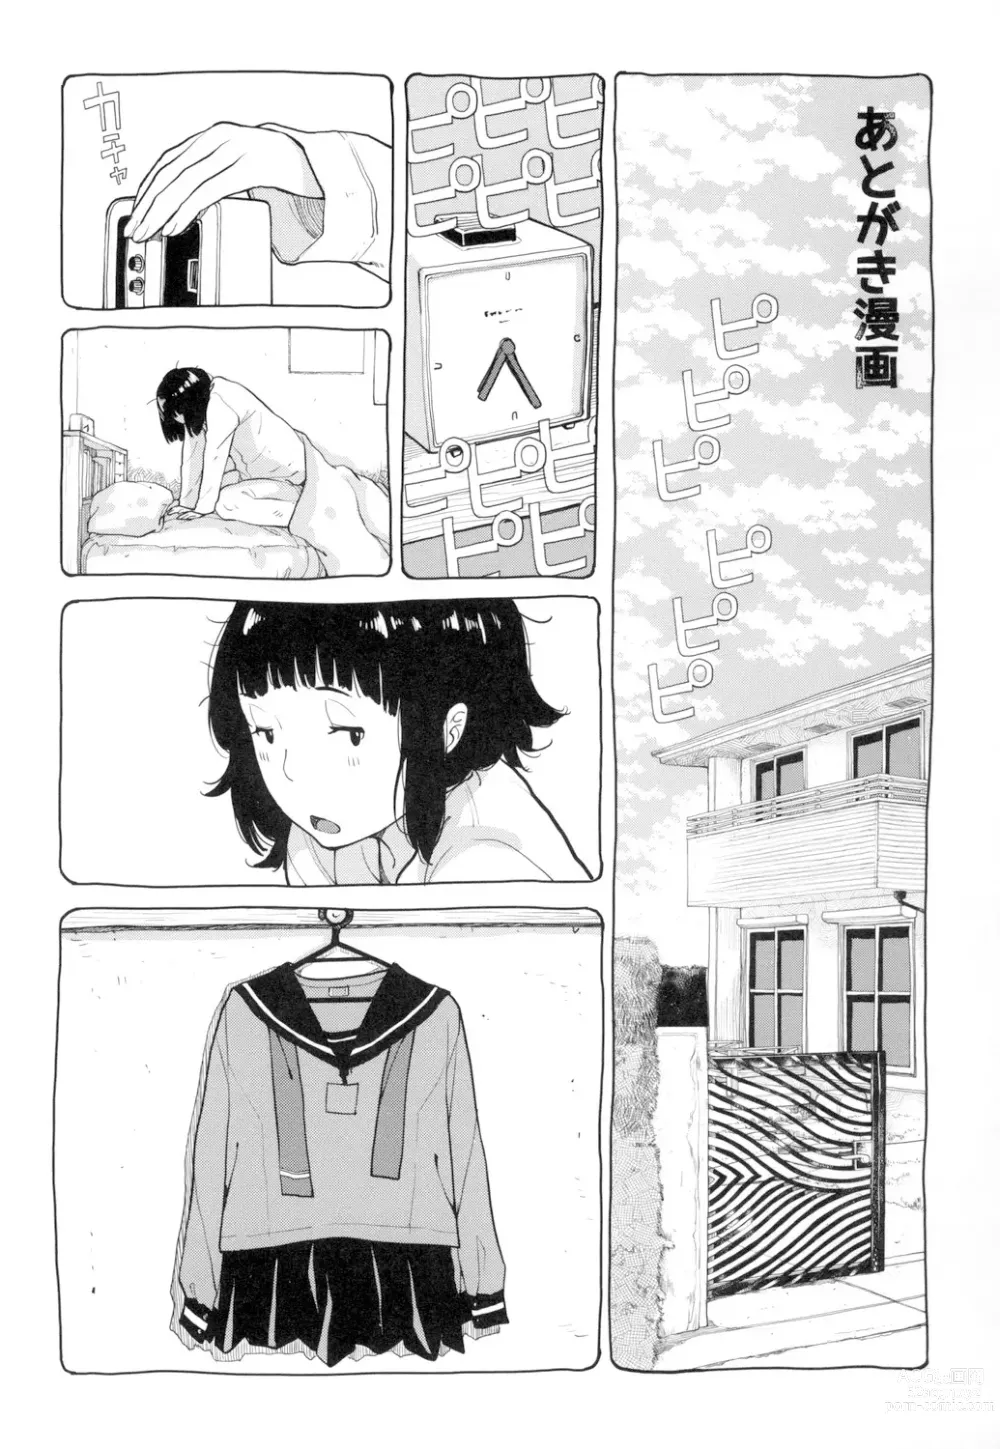 Page 212 of manga Seifuku Shijou Shugi -Natsu-